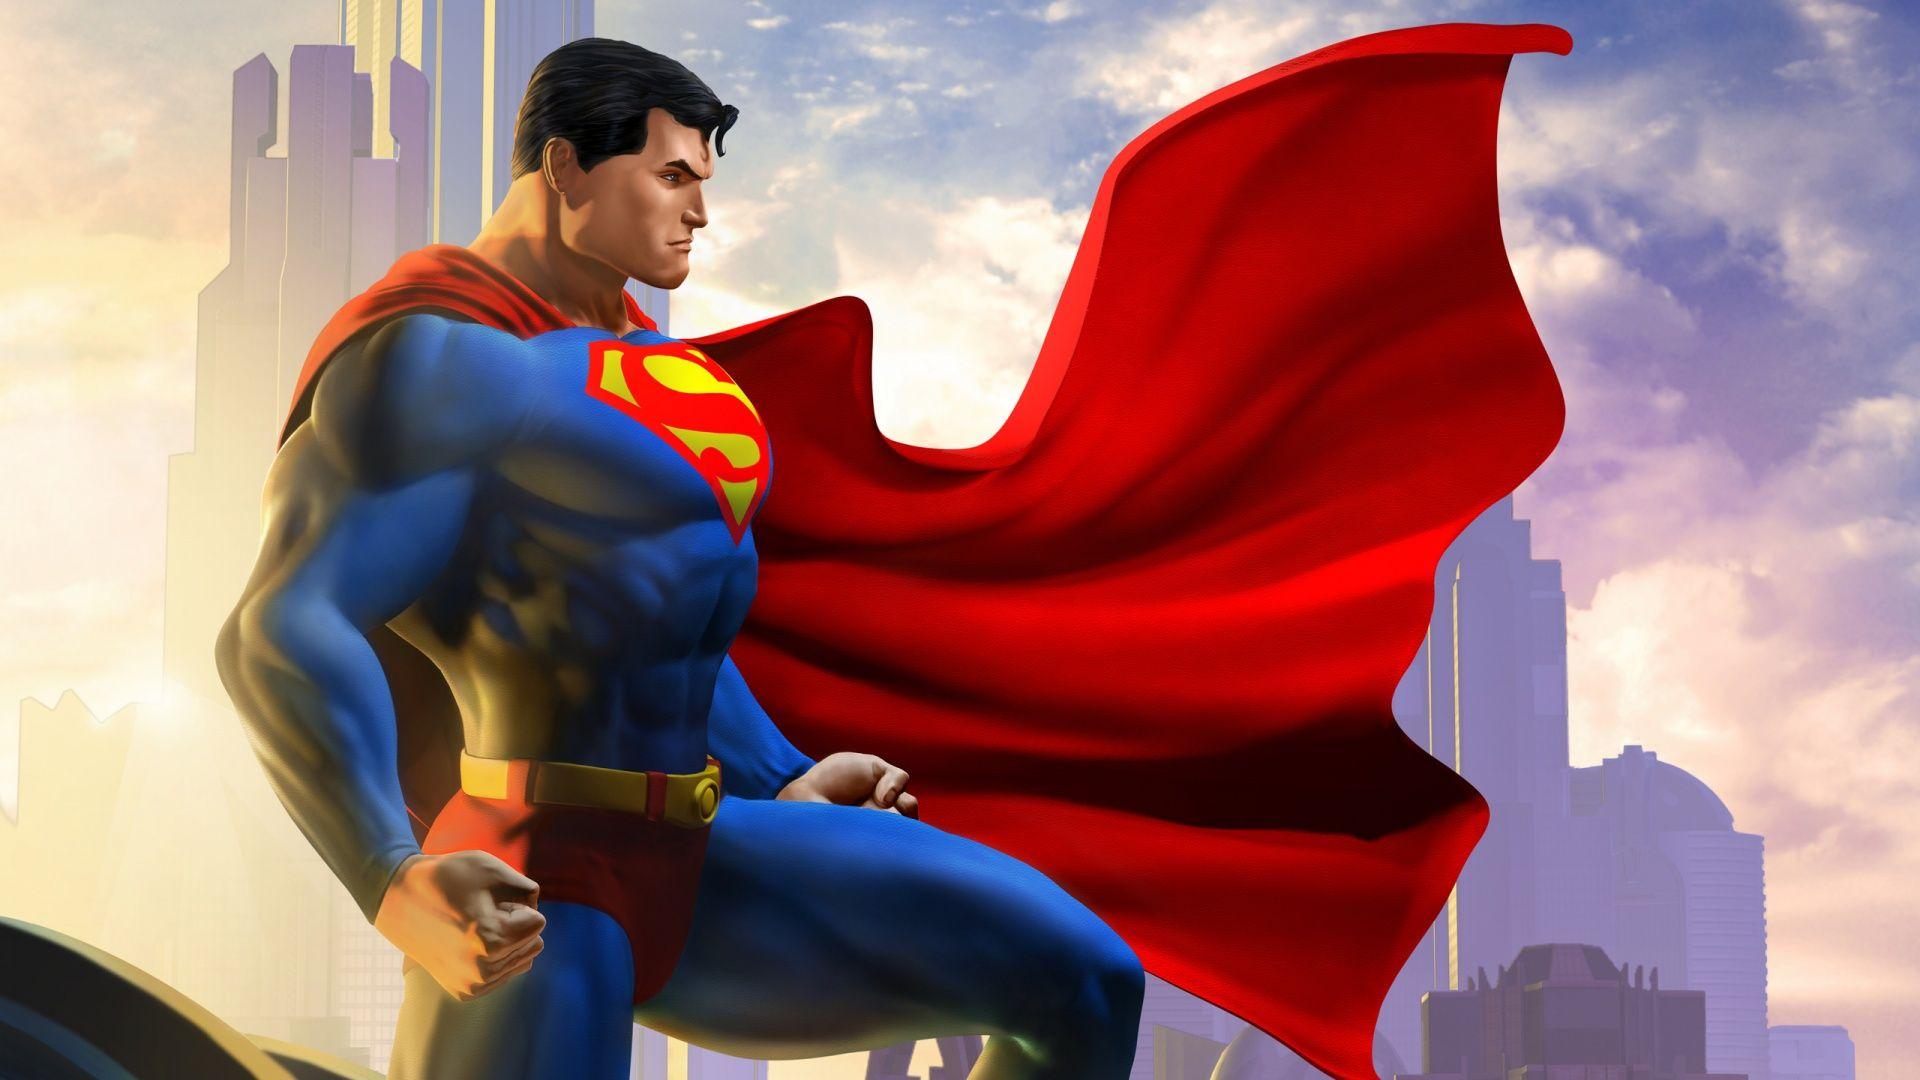 Superman in Justice league Wallpaper 4k Ultra HD ID5214